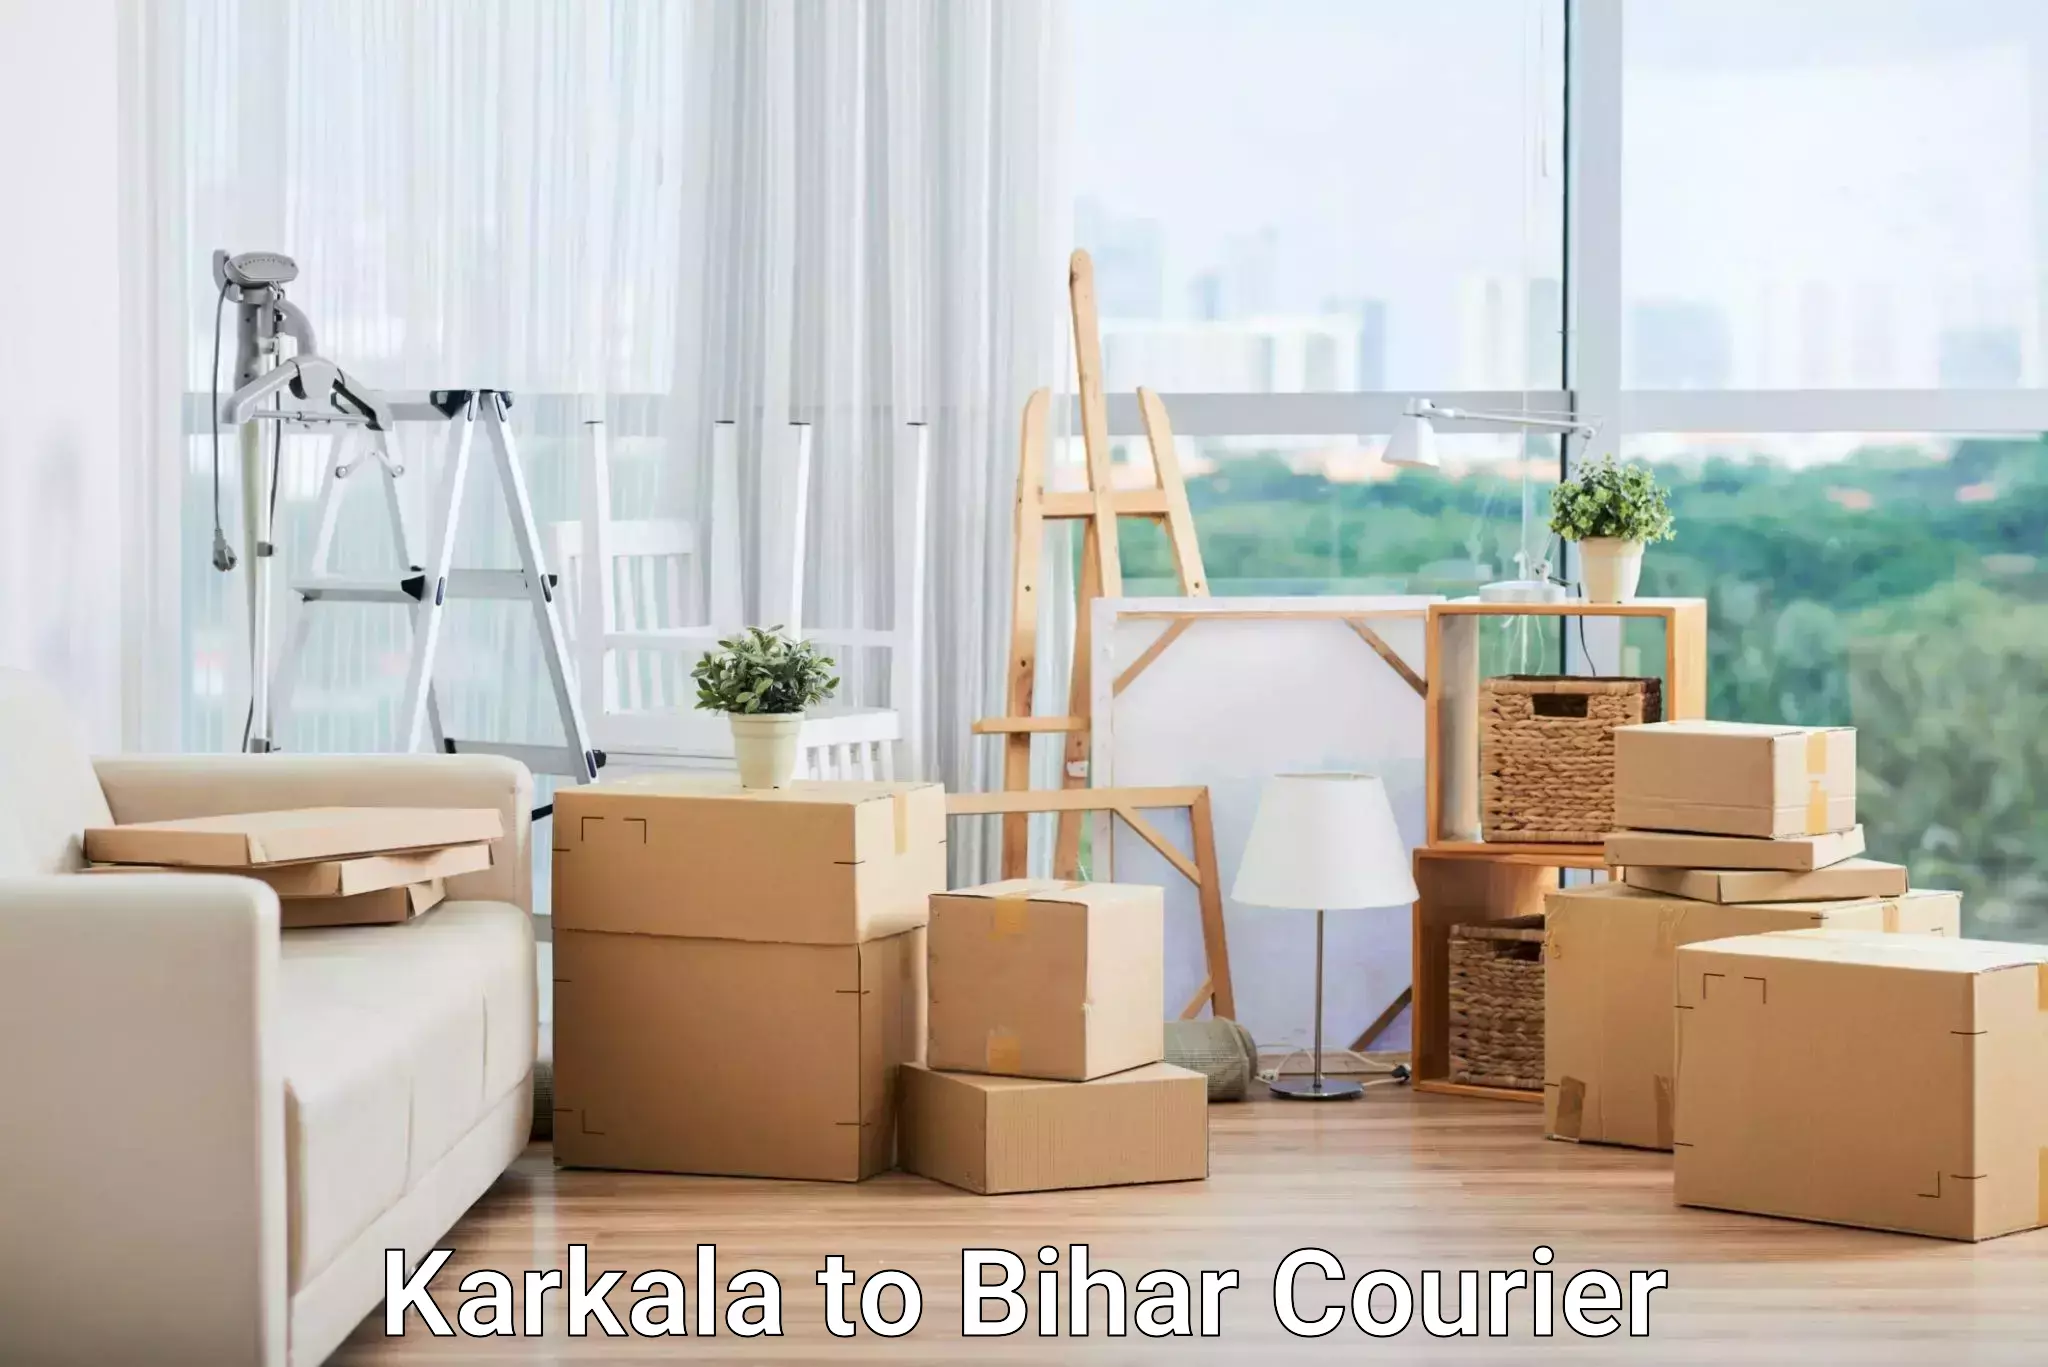 Efficient parcel tracking Karkala to Motipur